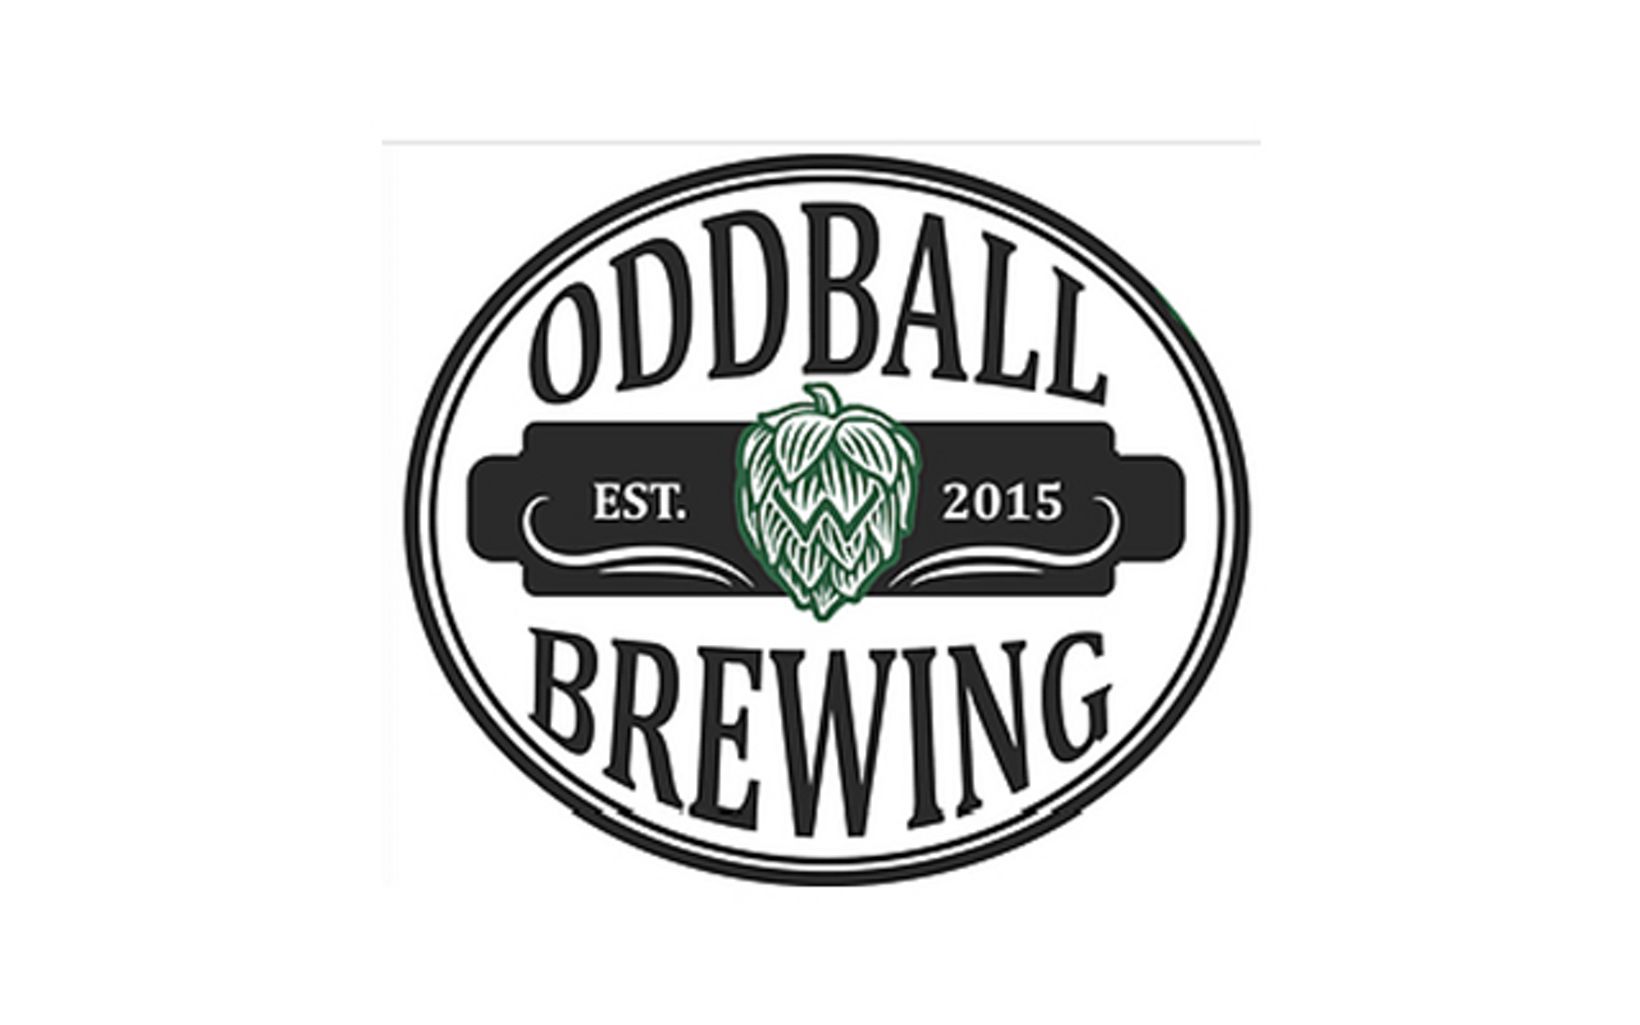 Oddball Brewing Company Suncook, New Hampshire 